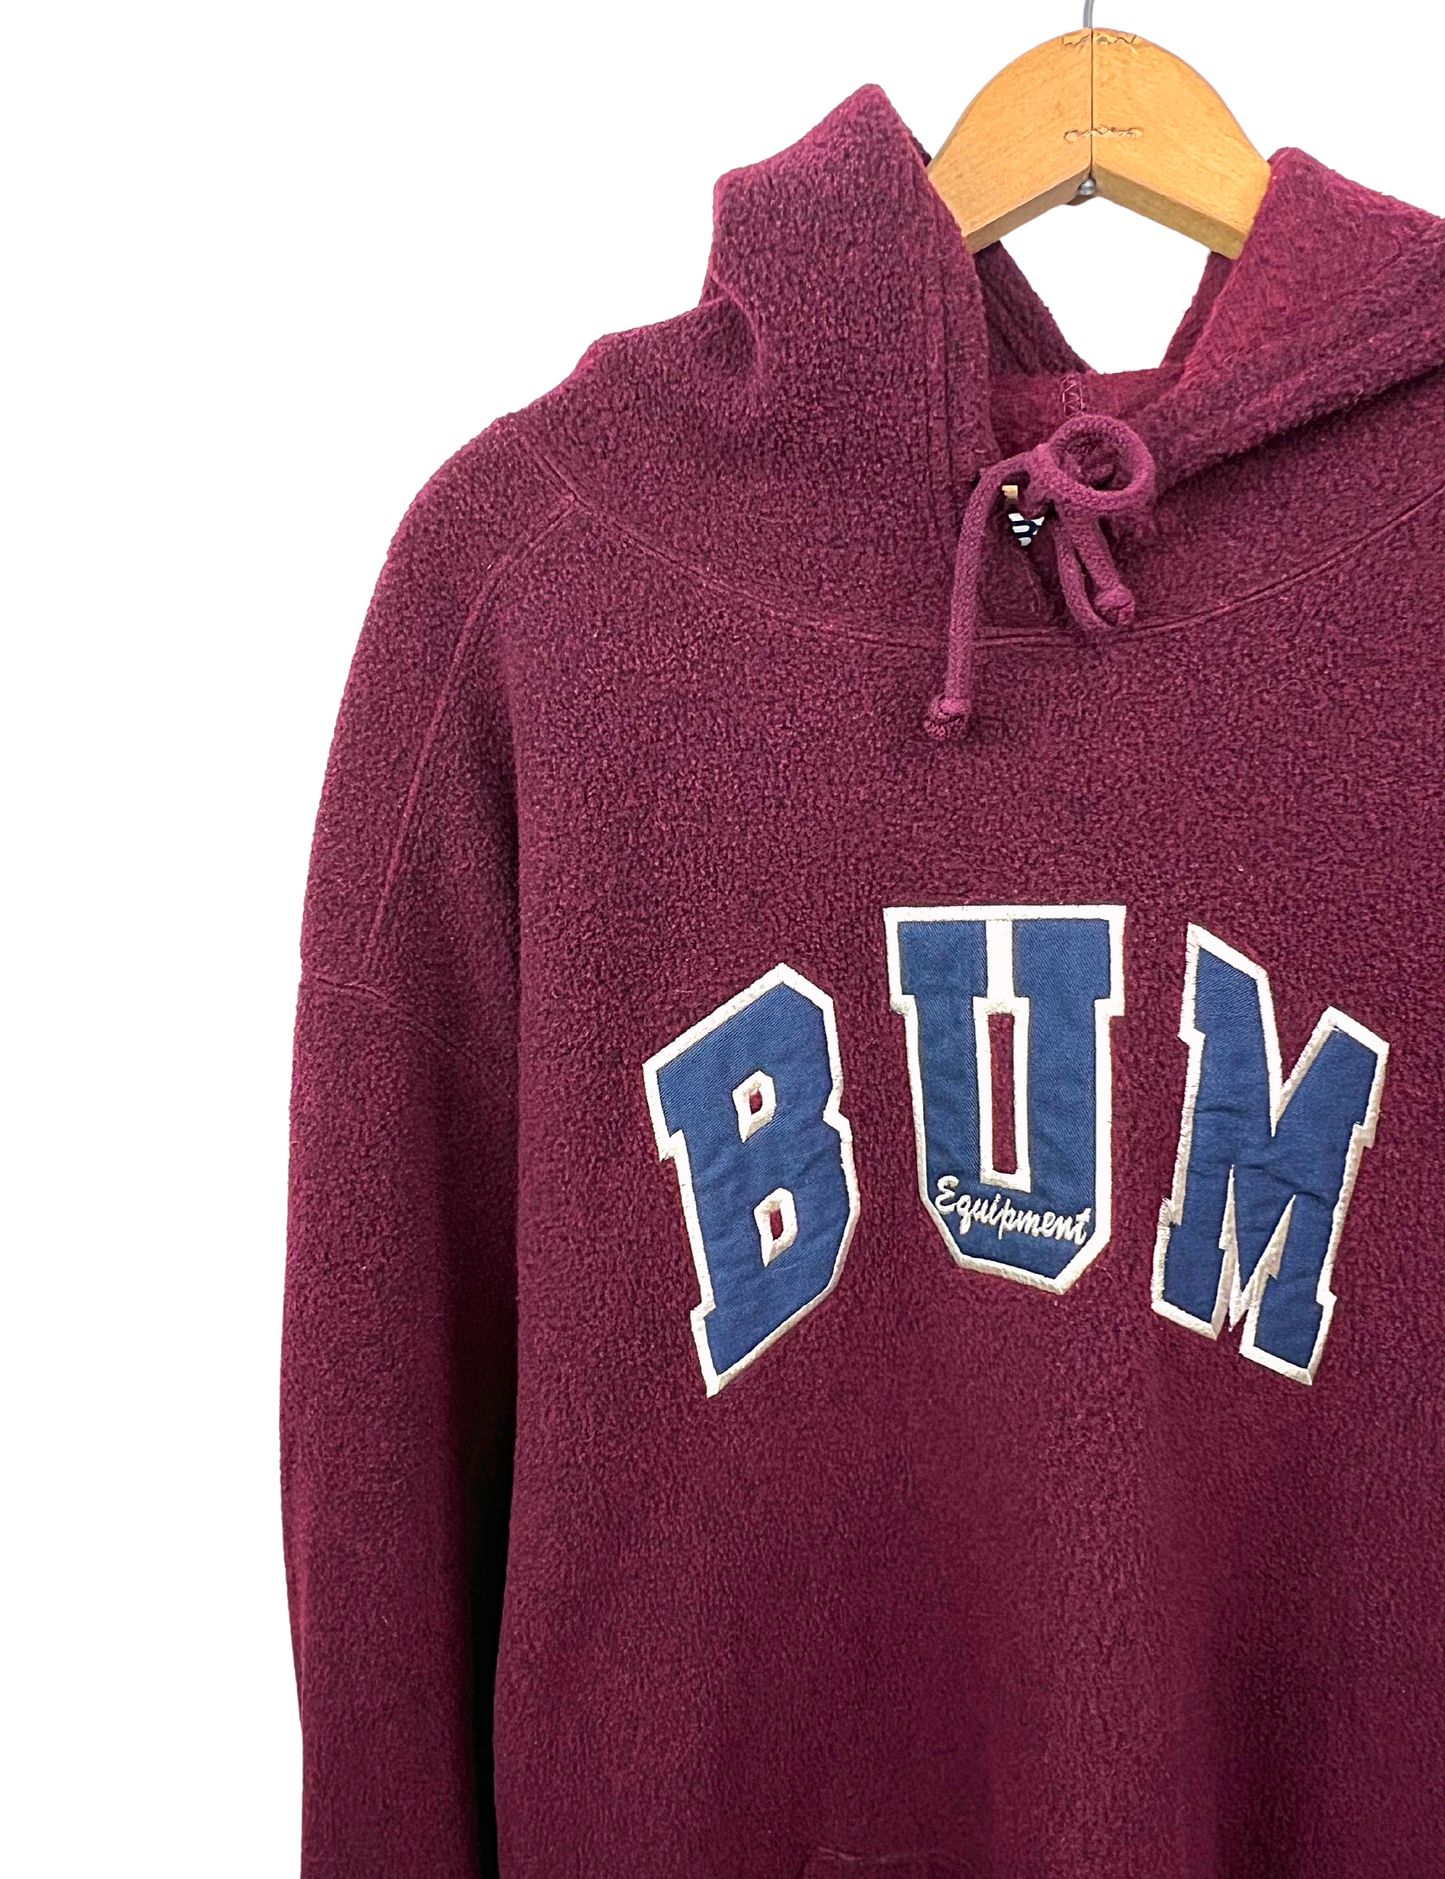 90’s BUM Equipment Fleece Hoodie Sweatshirt Size 1X/2X